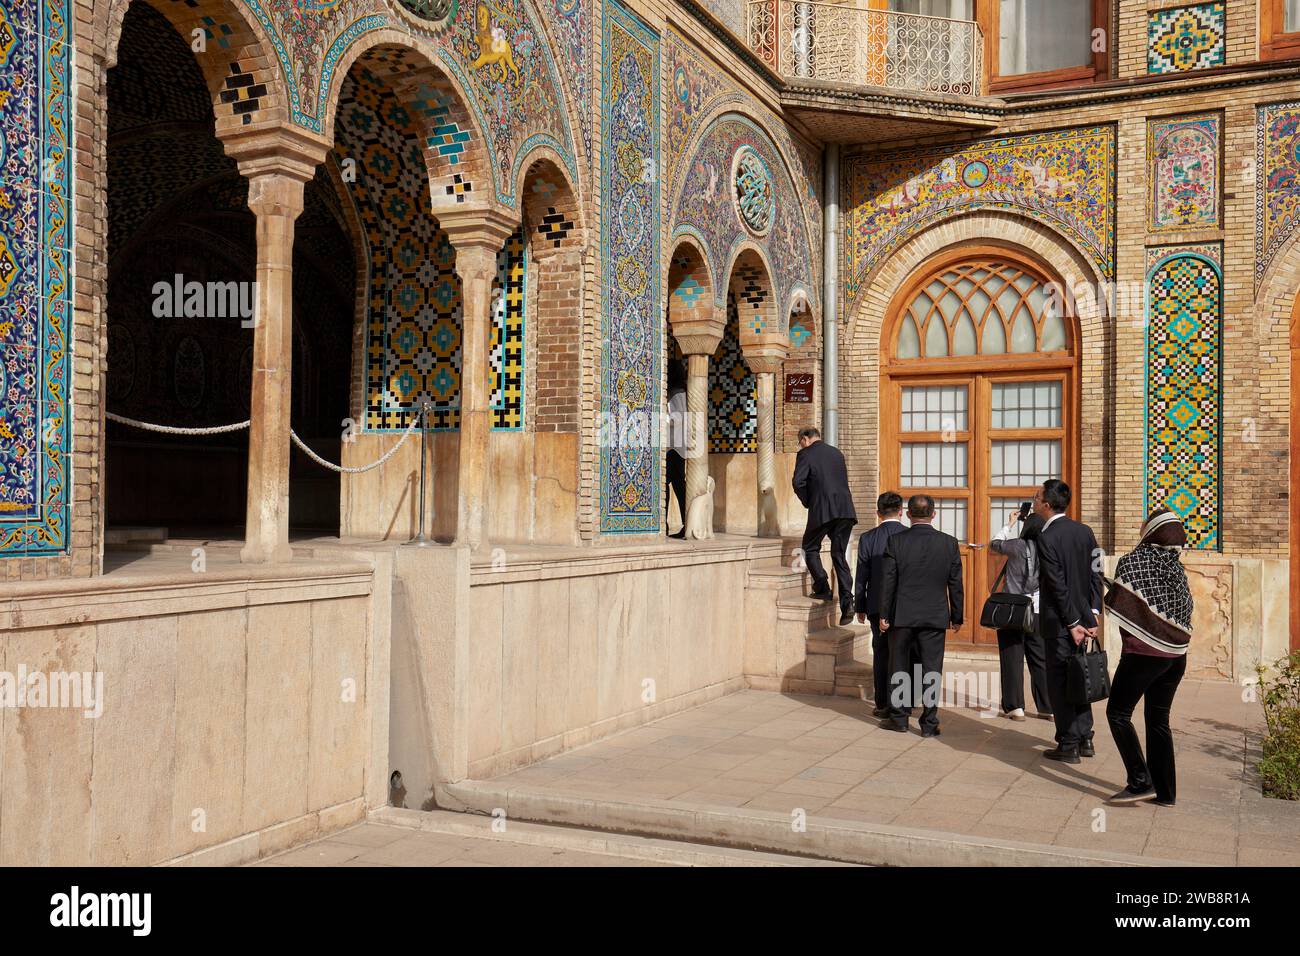 Les visiteurs en costume d'affaires entrent dans le Karim Khani NOOK, une structure du palais du Golestan, datant de 1759. Téhéran, Iran. Banque D'Images